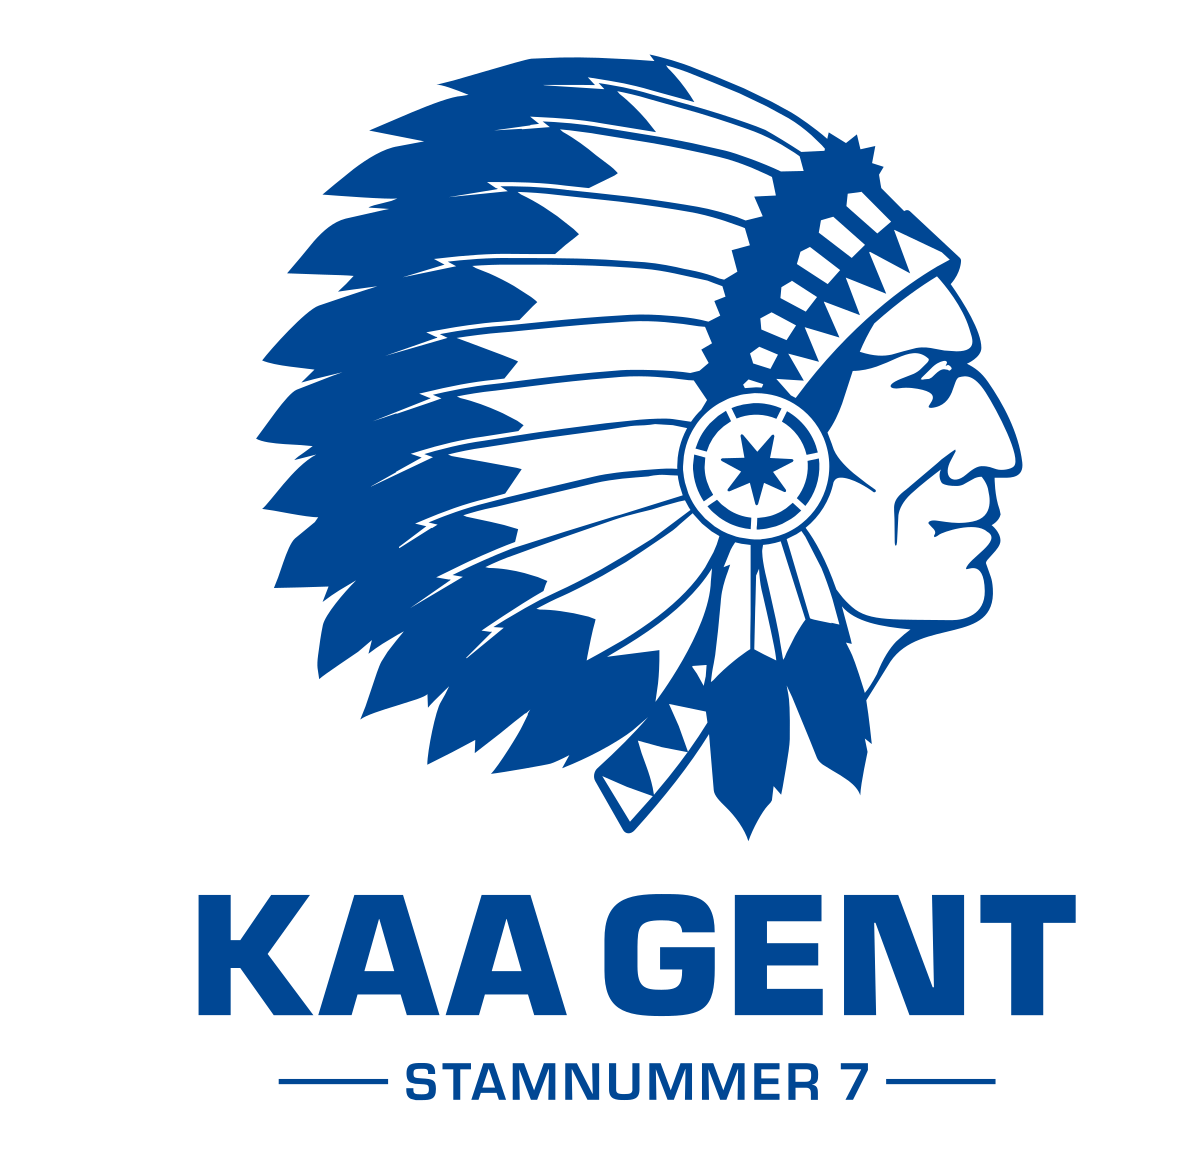 Gent-2 logo